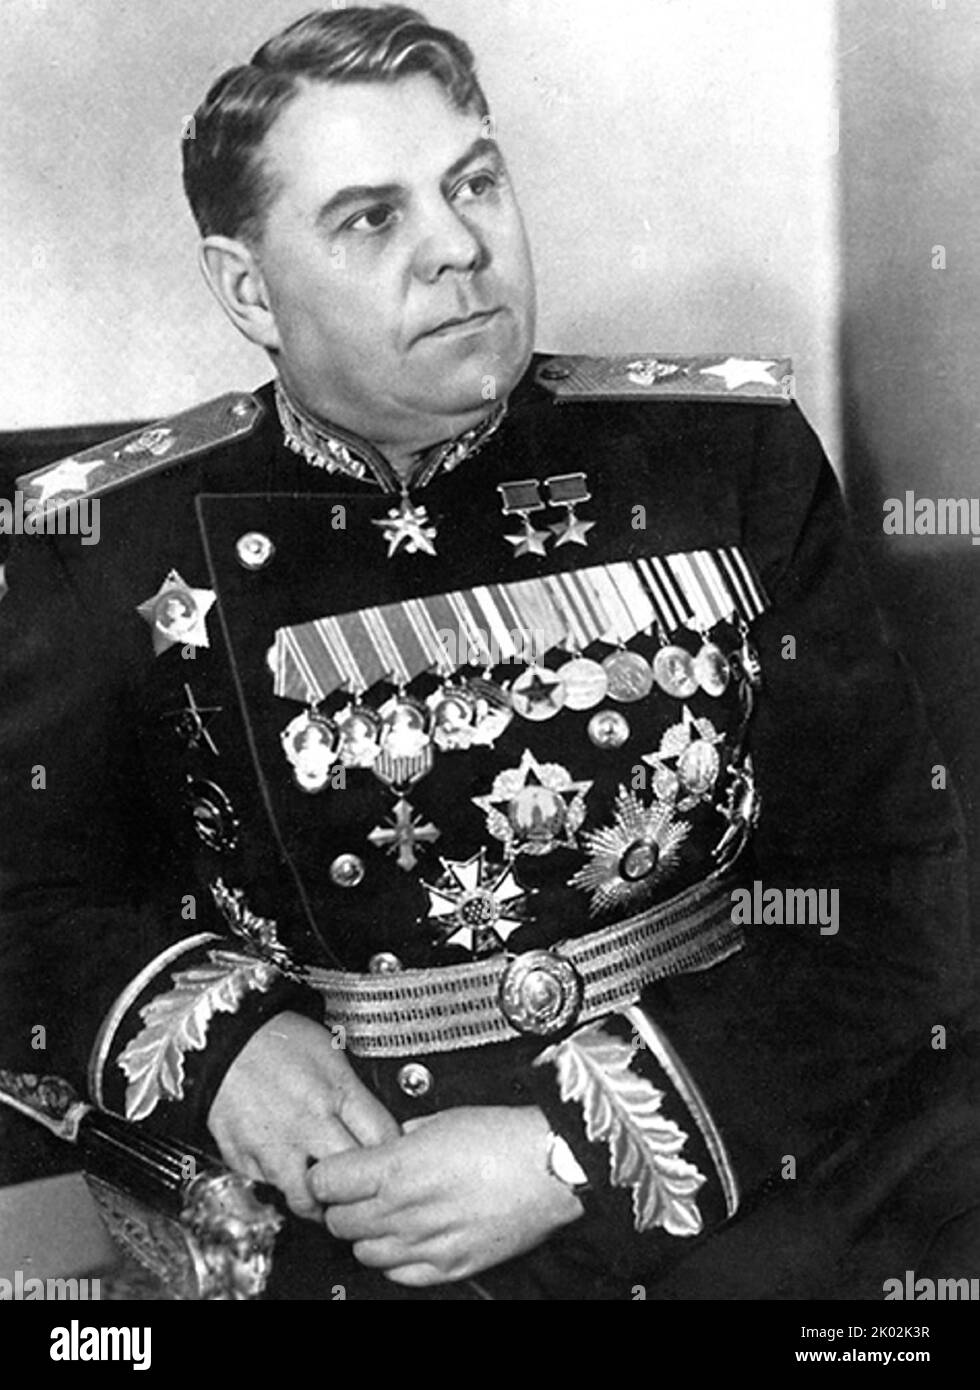 Aleksandr Mikhaïlovitch Vasilevskiy (1895 - 1977), maréchal de l'Union soviétique en 1943. Il a été chef de l'état-major général des forces armées soviétiques (1942-1945) et vice-ministre de la Défense pendant la Seconde Guerre mondiale, et ministre de la Défense de 1949 à 1953. Banque D'Images